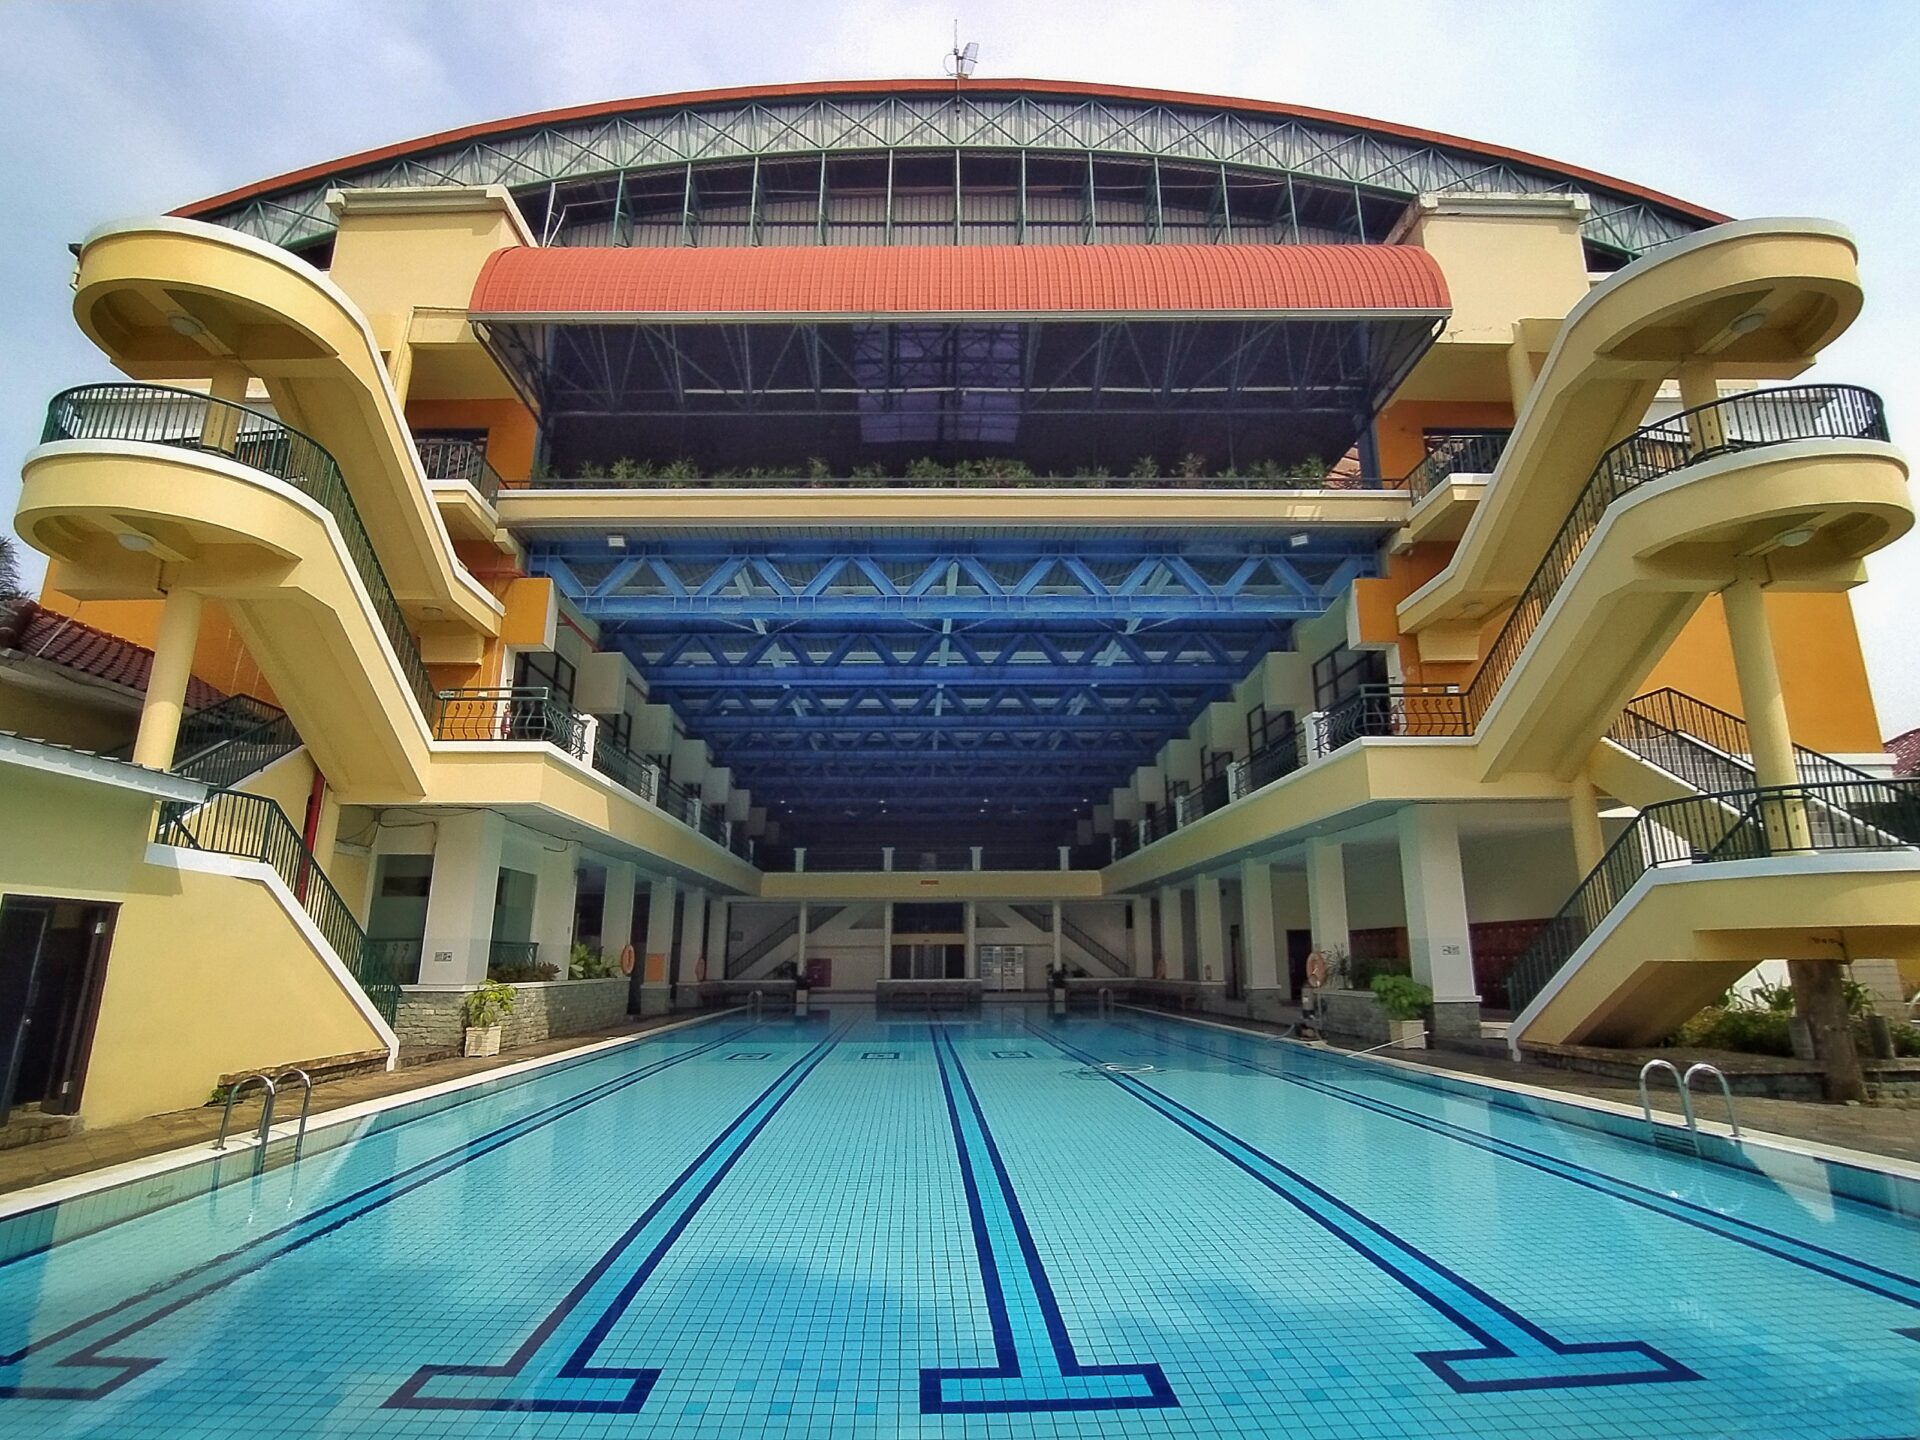 kolam renang jakarta barat 10 Kolam Renang Jakarta Barat, Wisata Air Keluarga Terpopuler